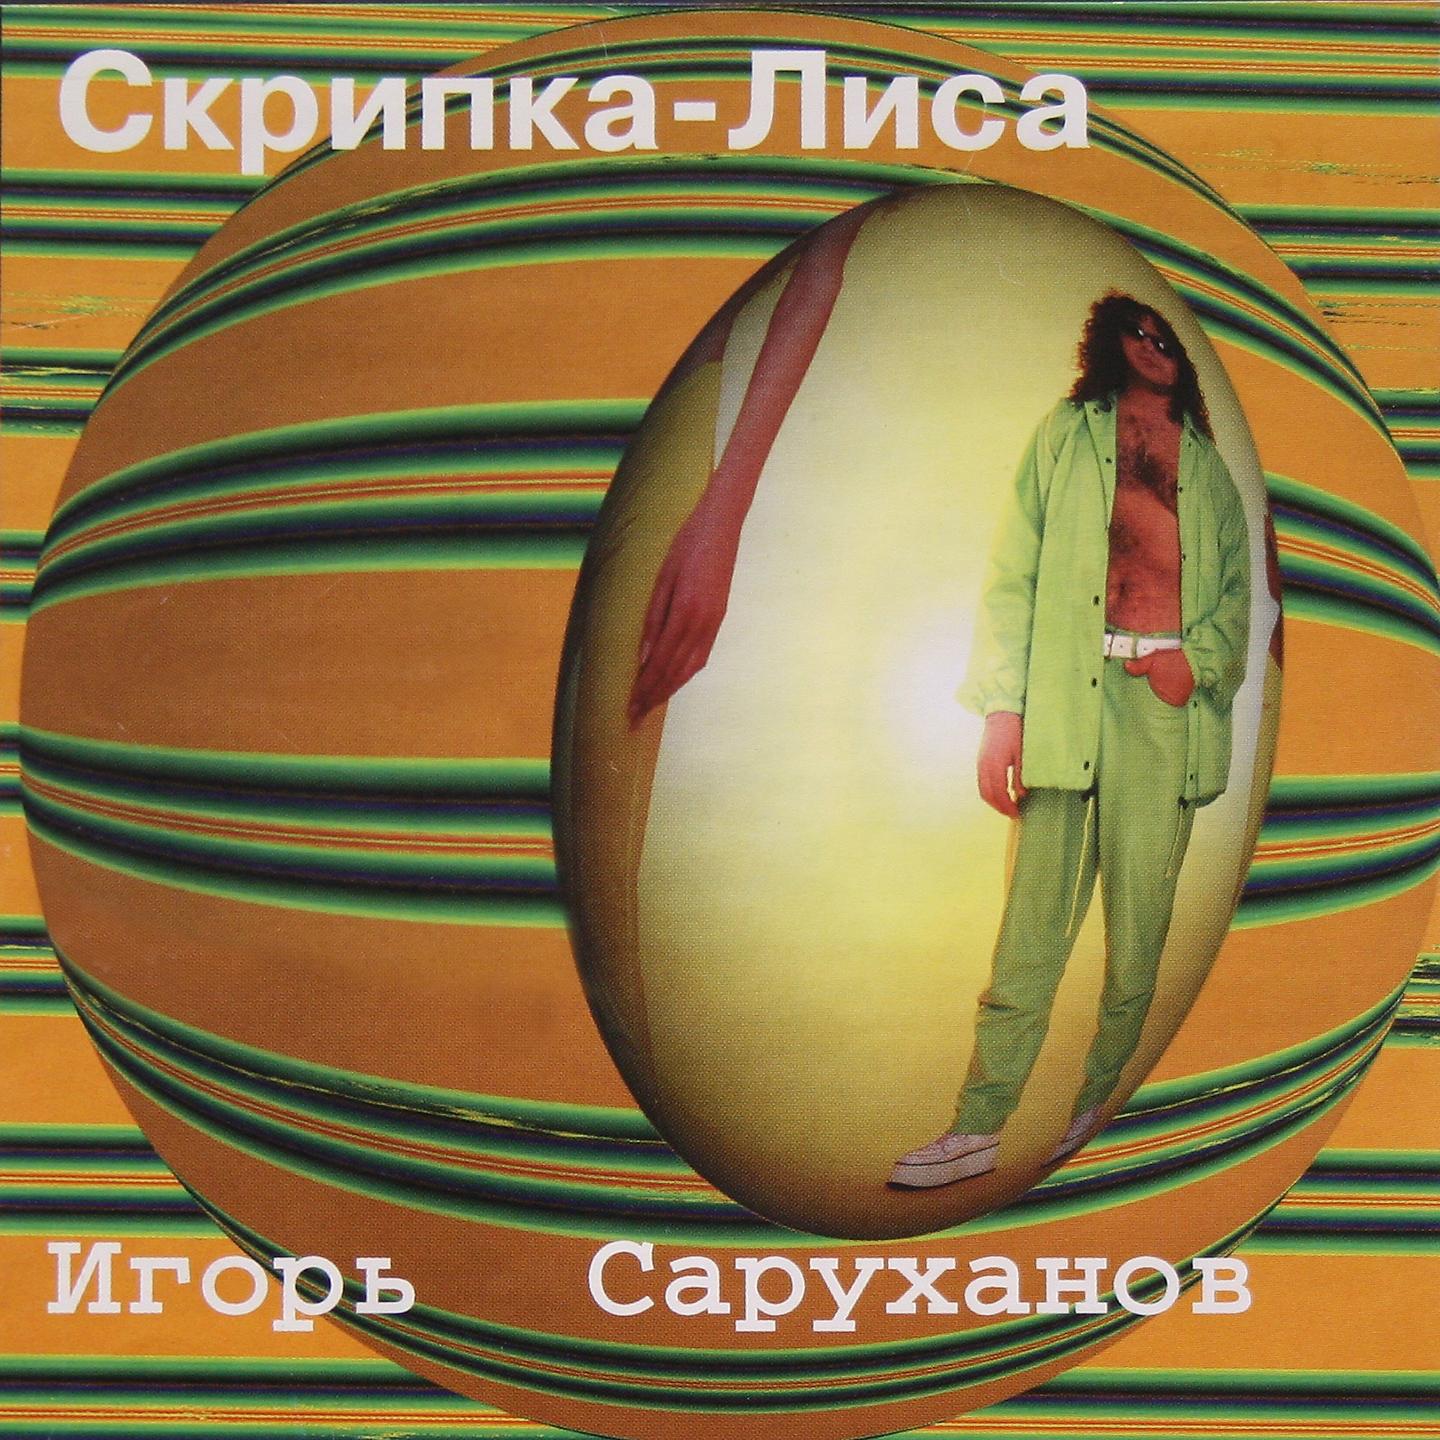 Скрип колеса песня саруханов. Скрипка лиса Игоря Саруханова. 1997 - Скрипка-лиса.